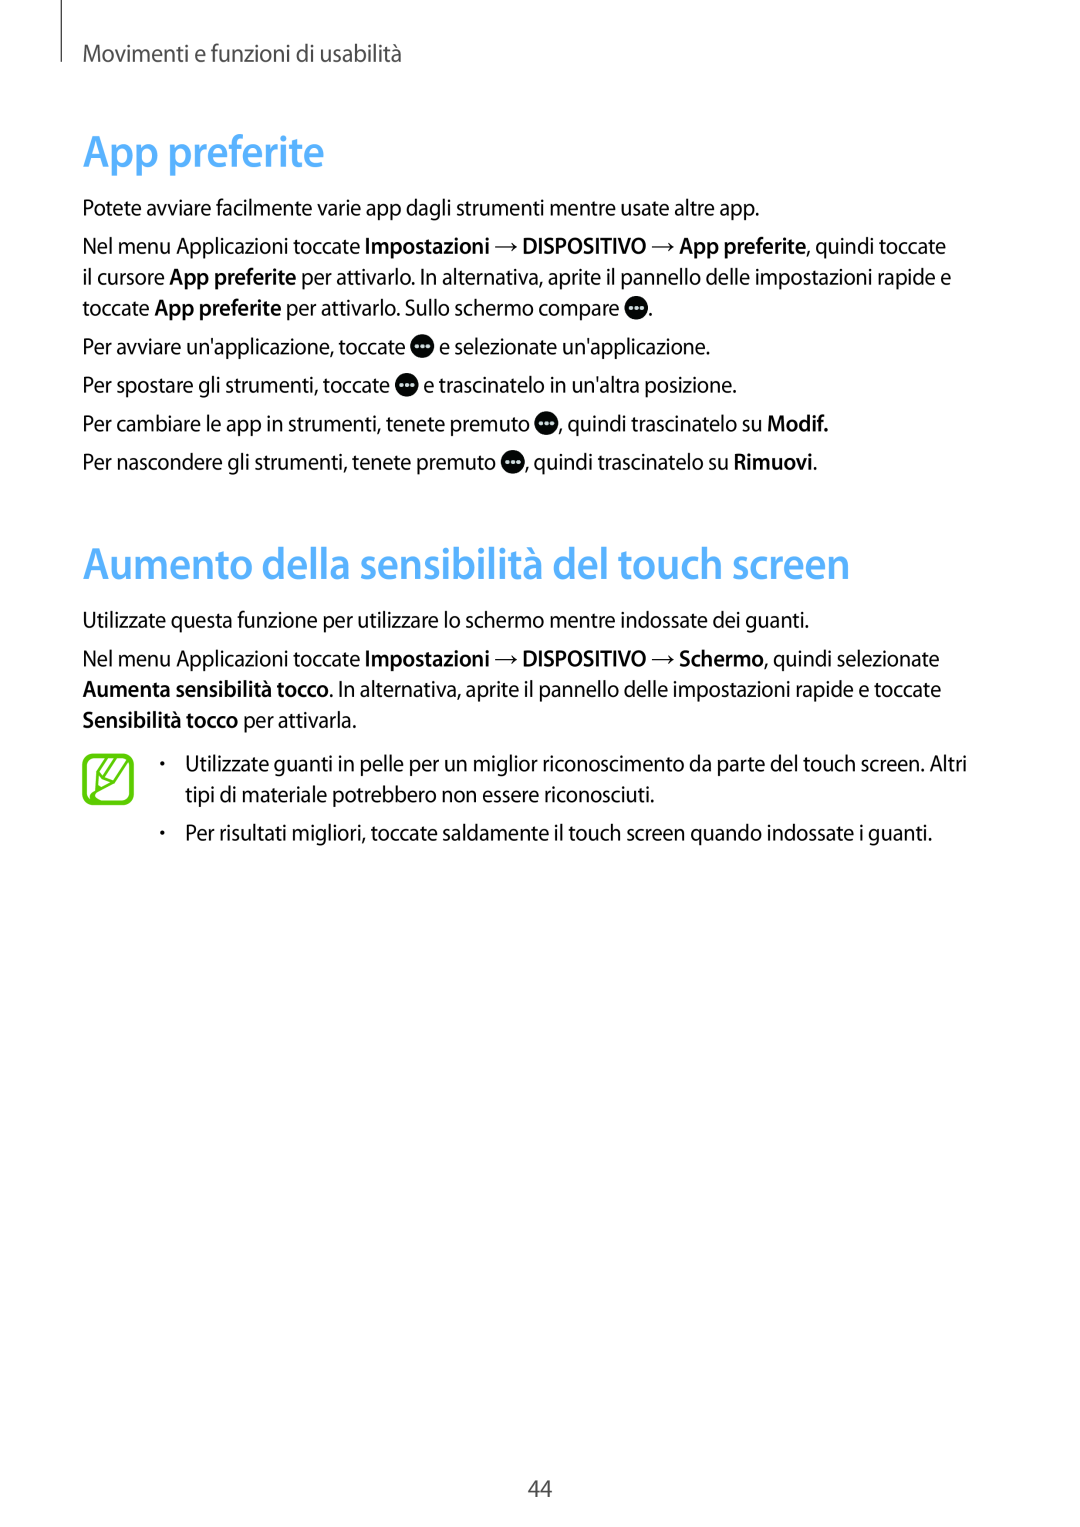 Samsung SM-T700NZWAITV manual App preferite, Aumento della sensibilità del touch screen, Movimenti e funzioni di usabilità 